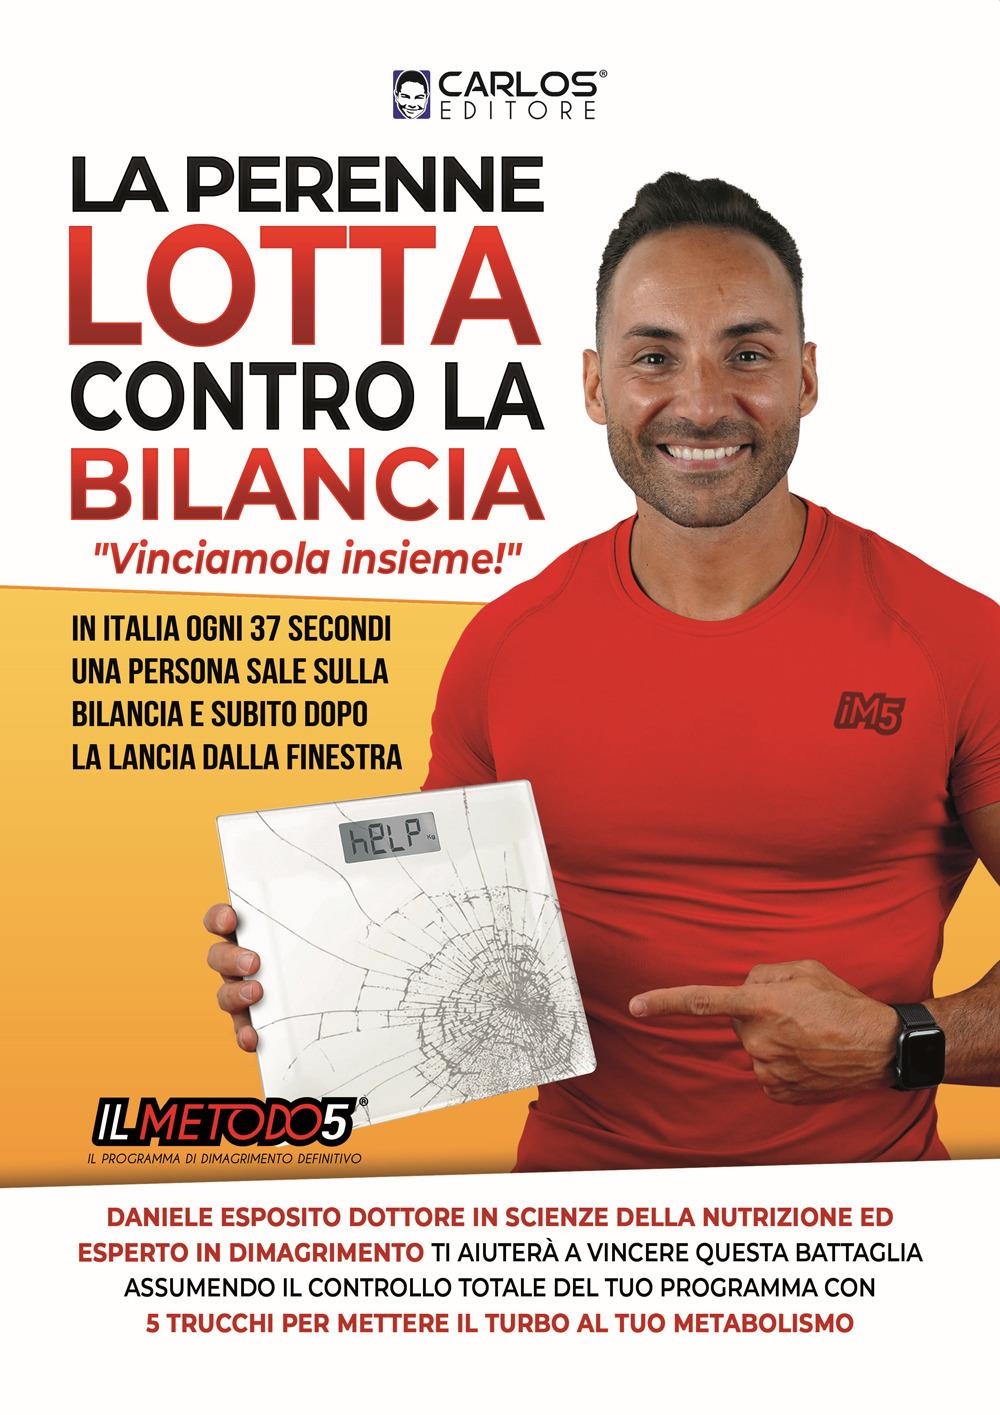 Libri Daniele Esposito - La Perenne Lotta Contro La Bilancia NUOVO SIGILLATO, EDIZIONE DEL 01/01/2021 SUBITO DISPONIBILE